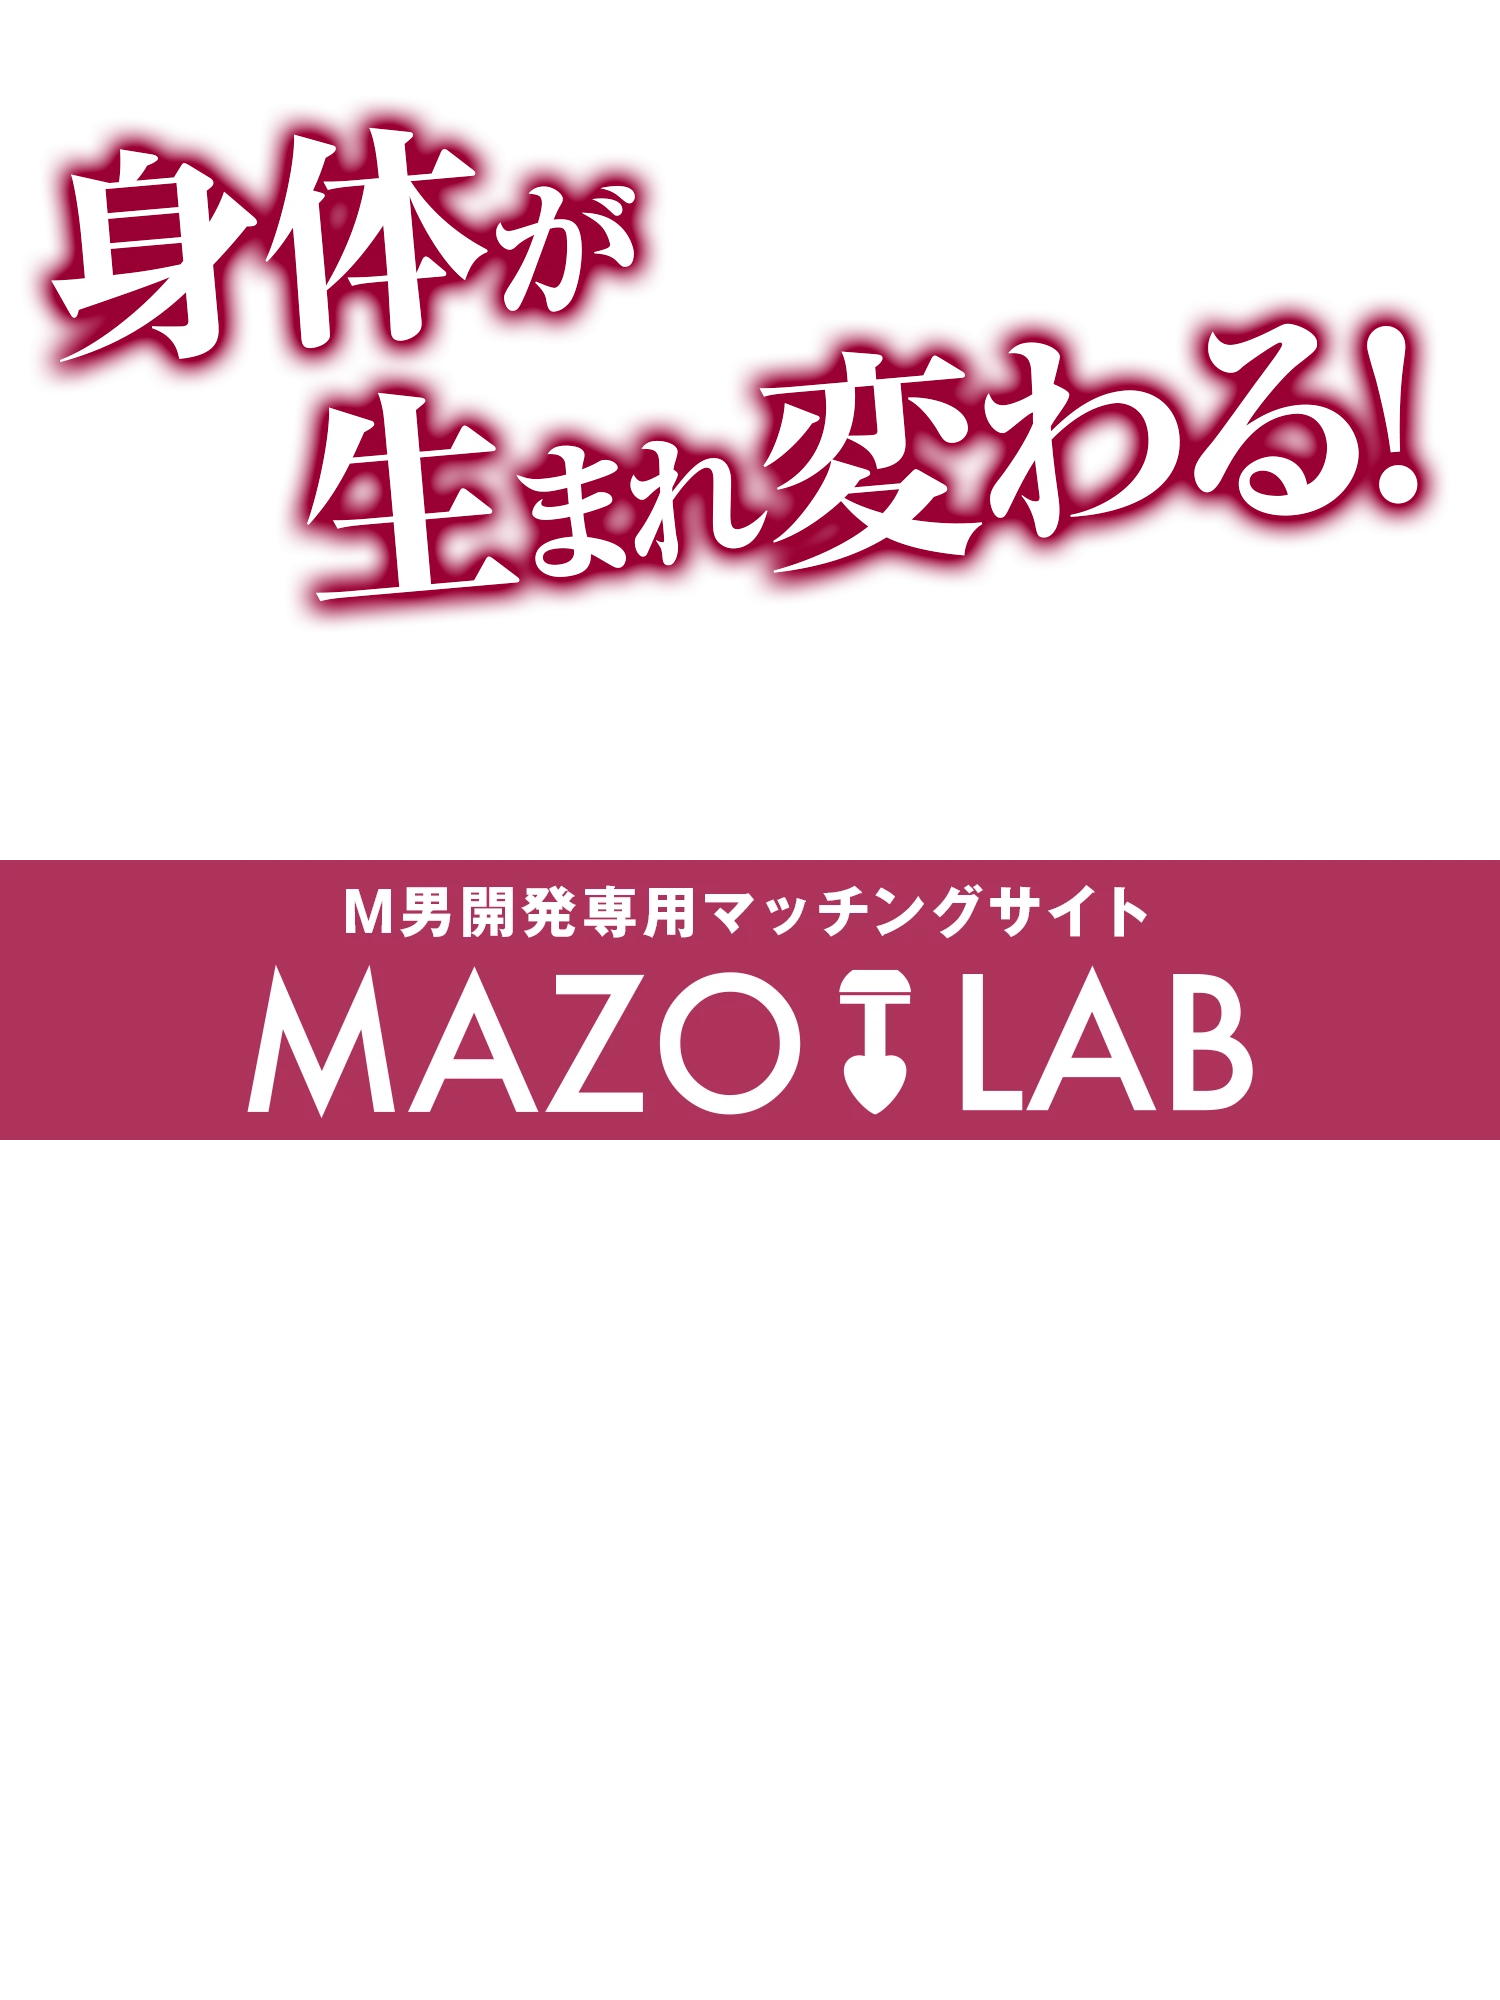 M男開発専用マッチングサイト M's - MAZO LAB